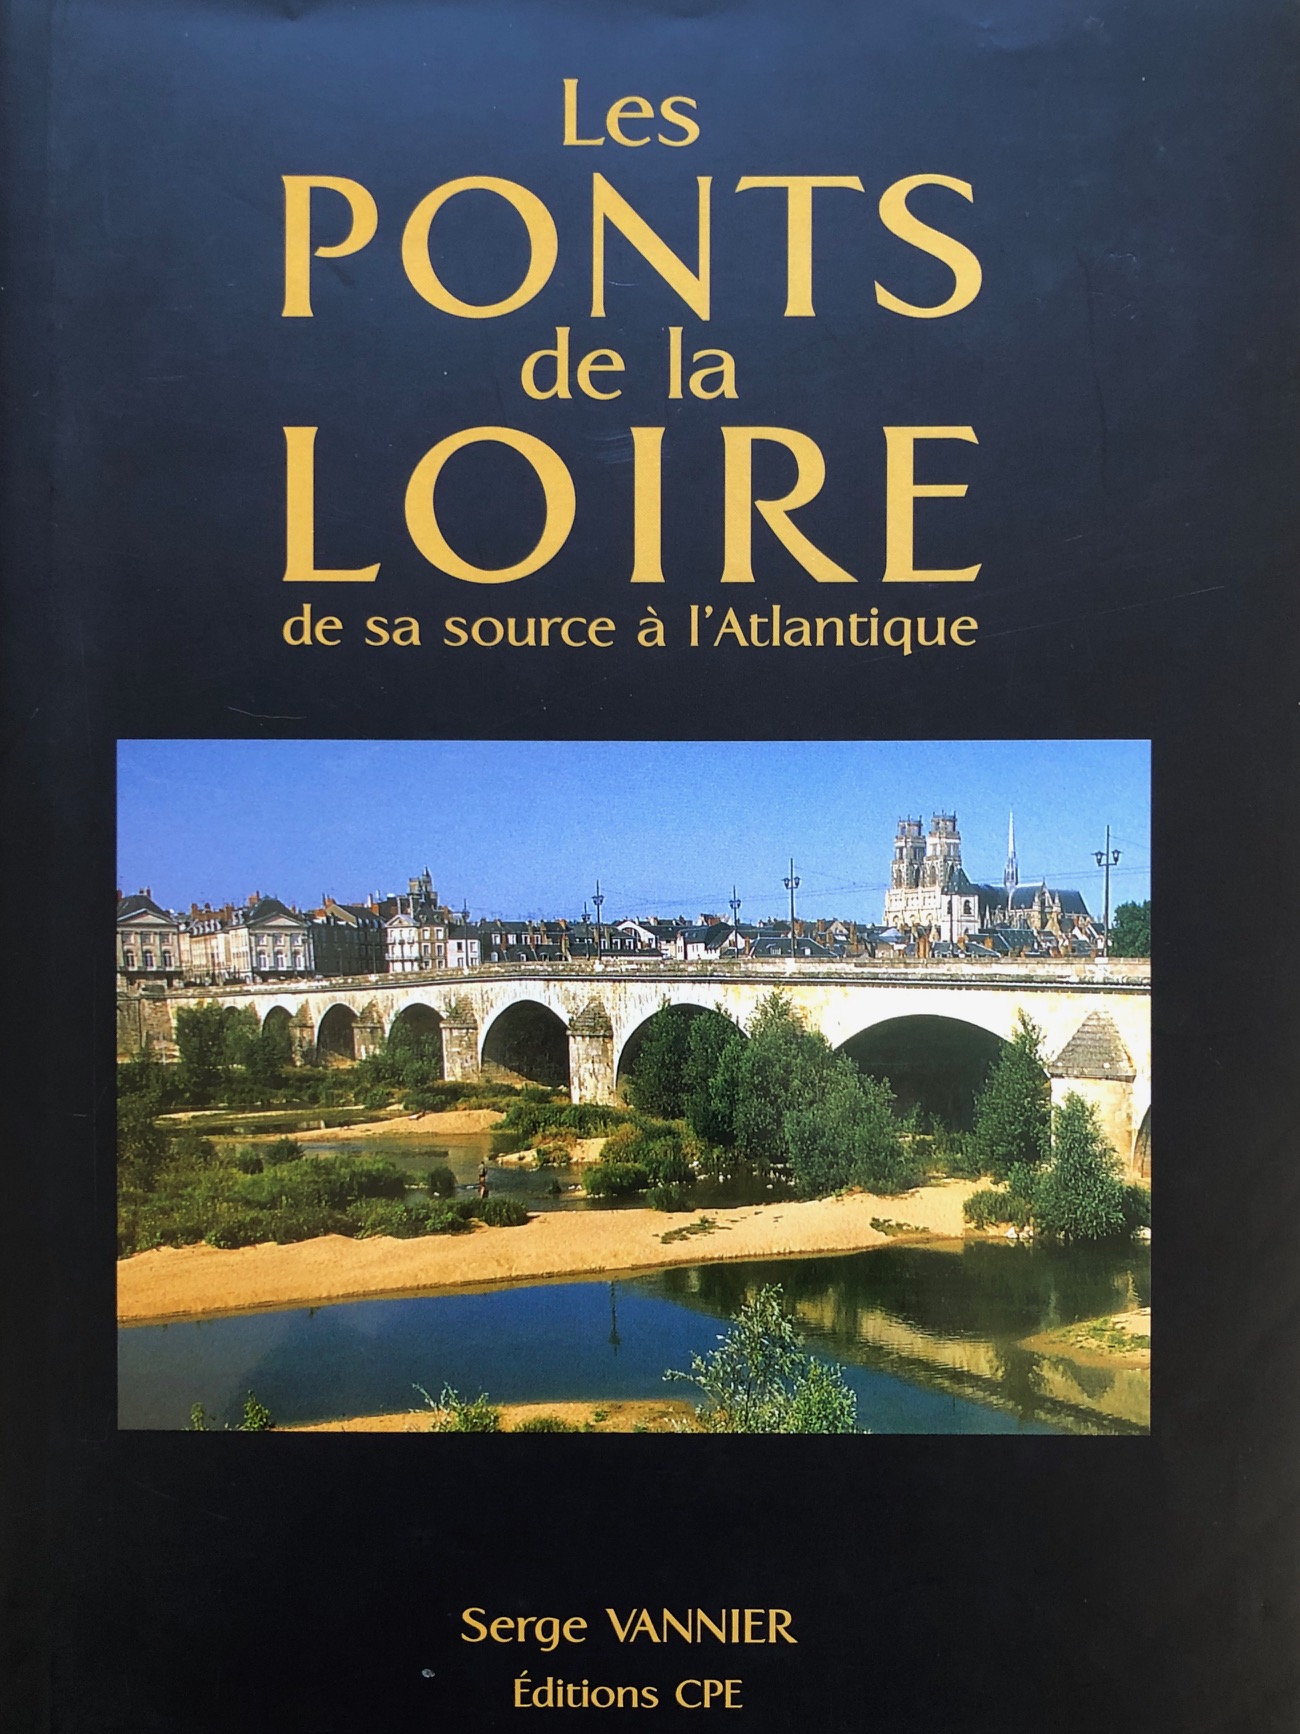 VANNIER - Les pont de la Loire IMG_1268